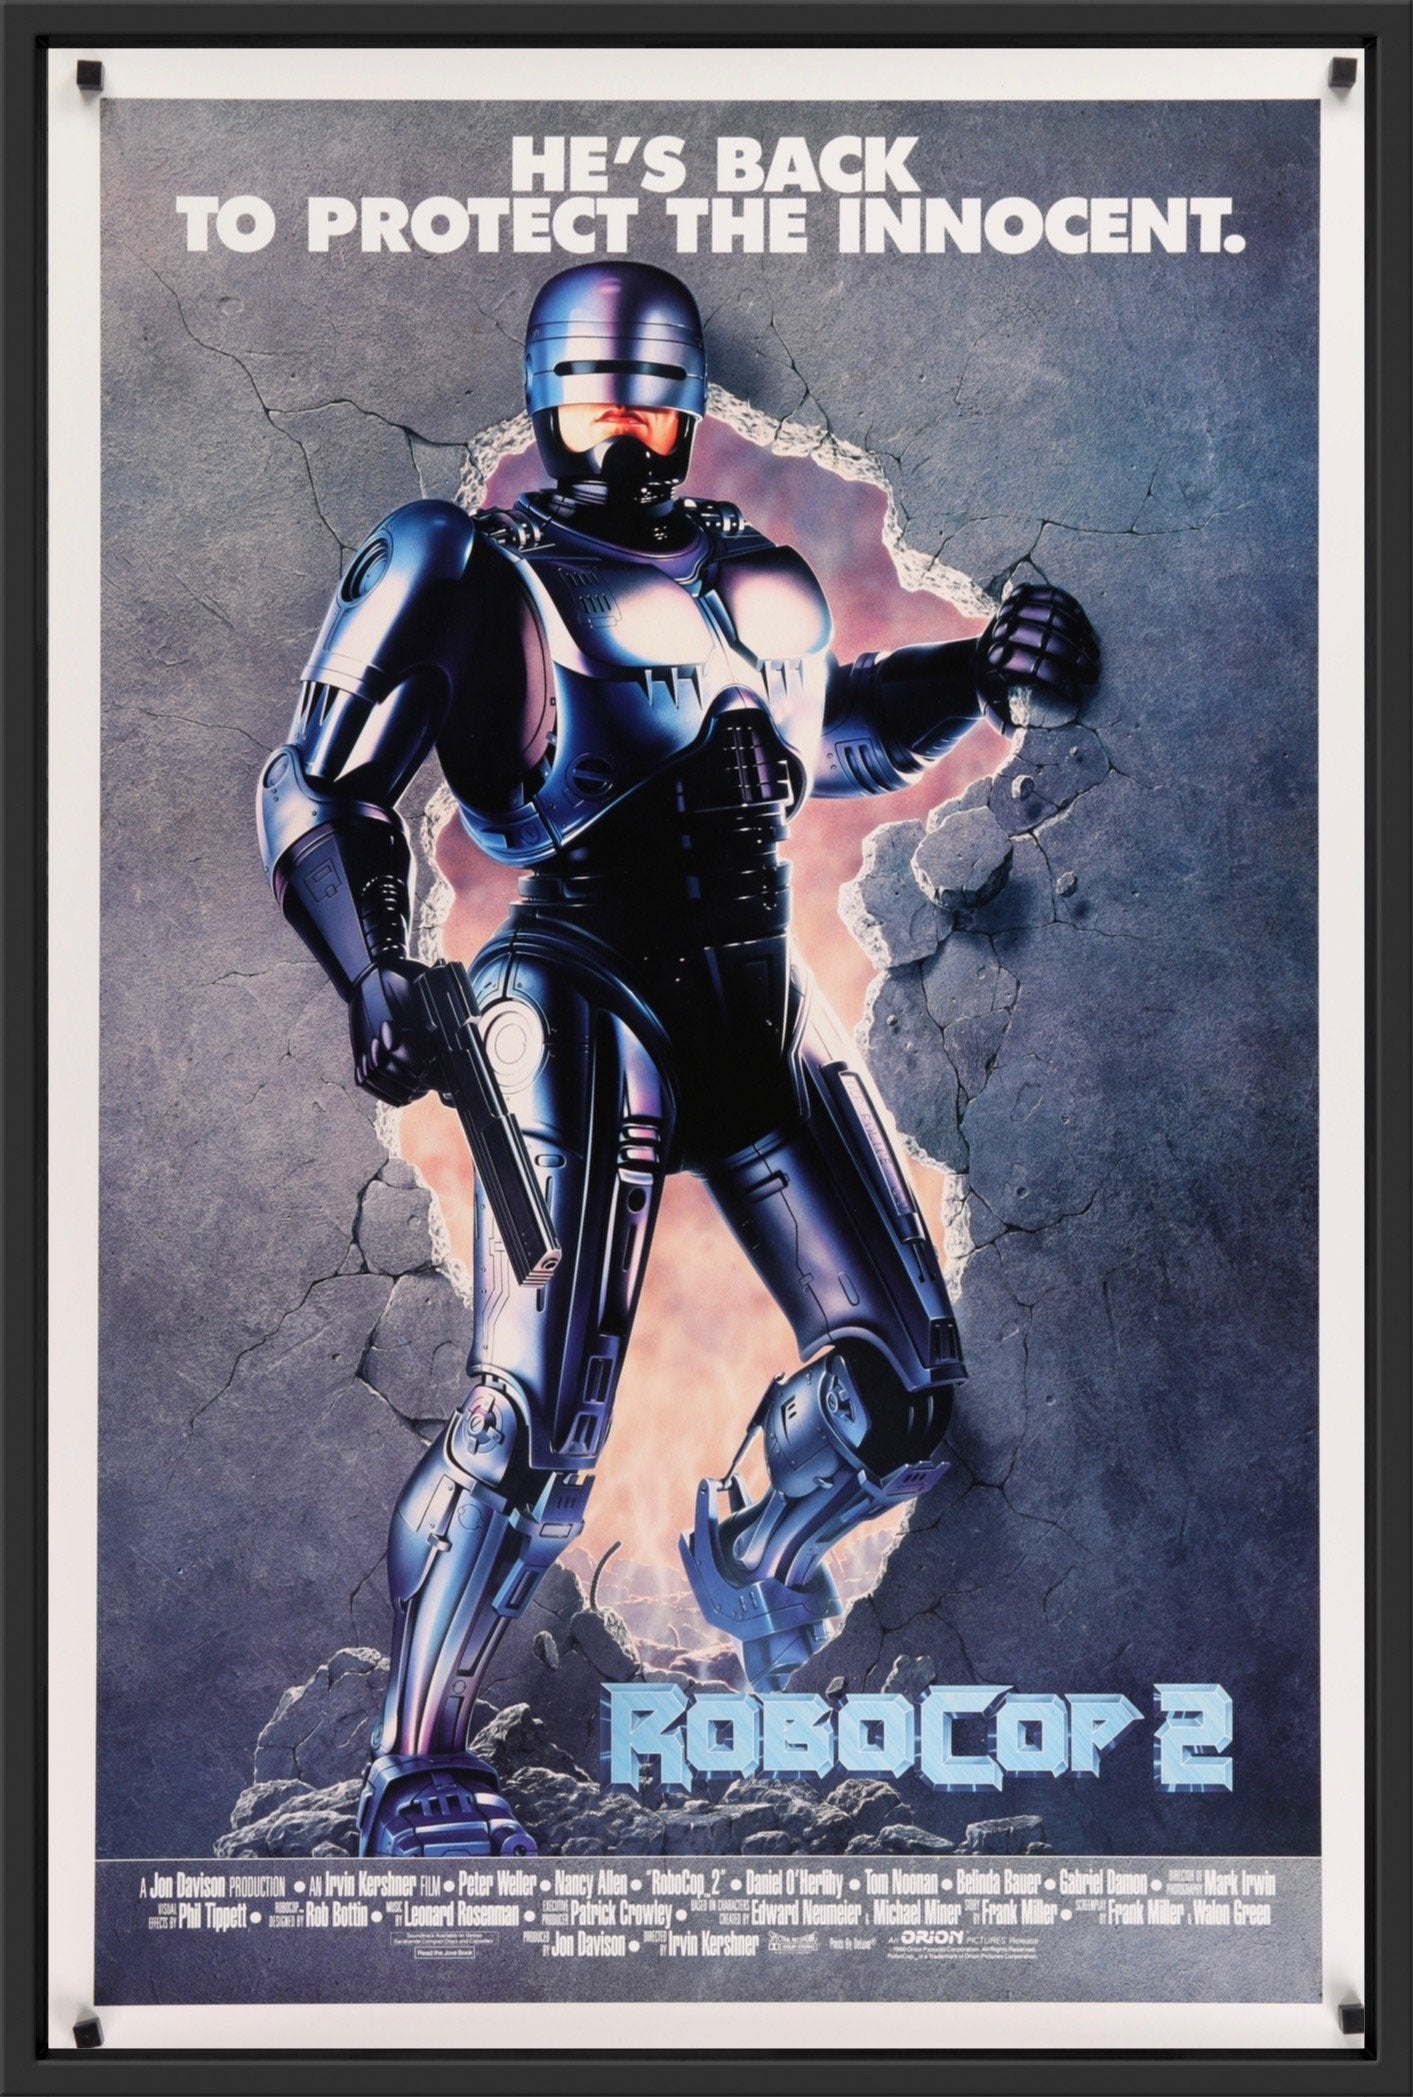 An original movie poster for the film Robocop 2